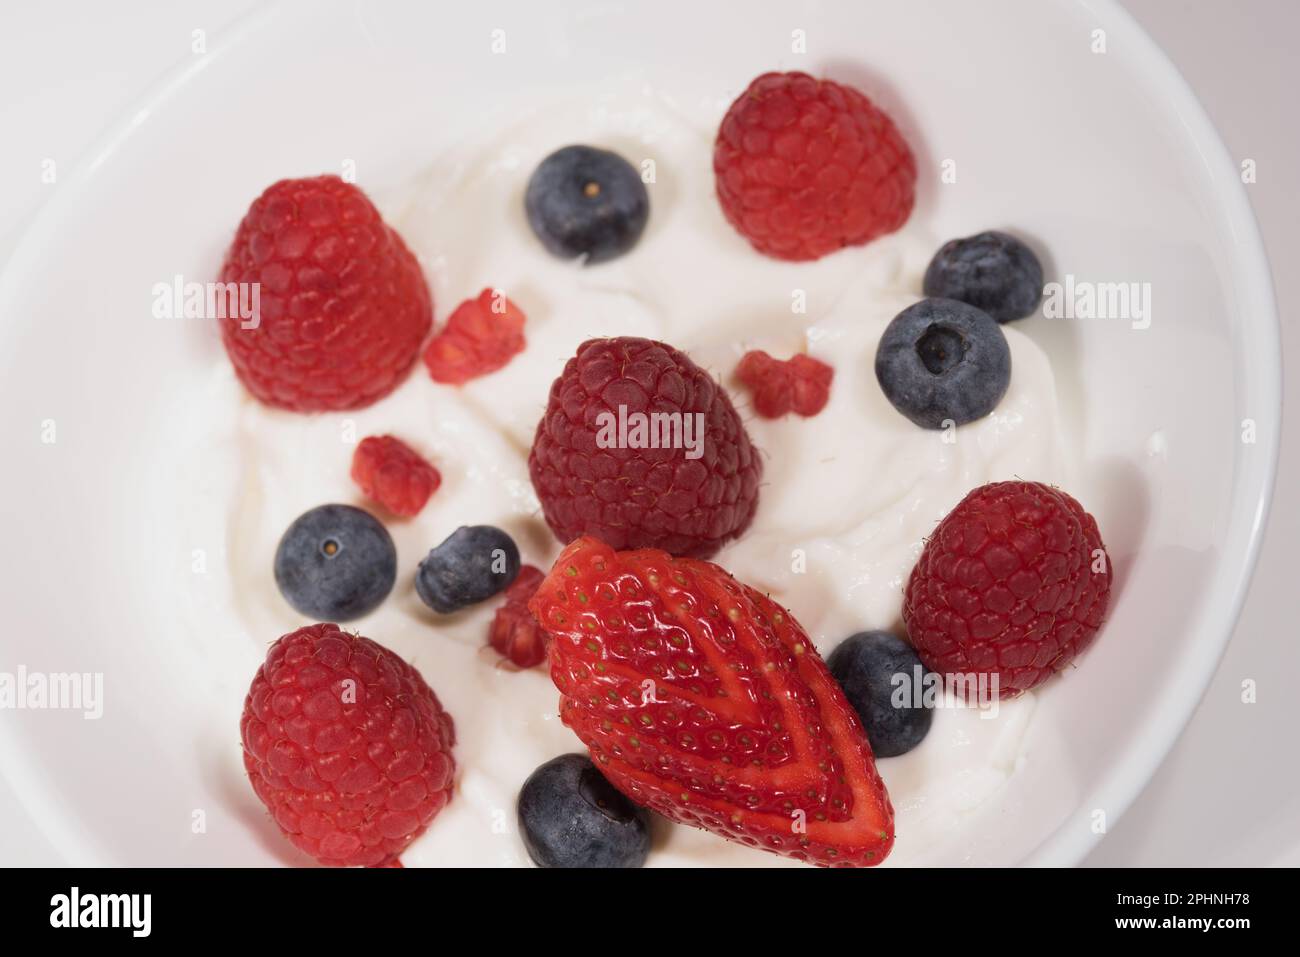 primo Piano di Frutti rossi, foto Macro A Lamponi mirtilli e fragole Stockfoto